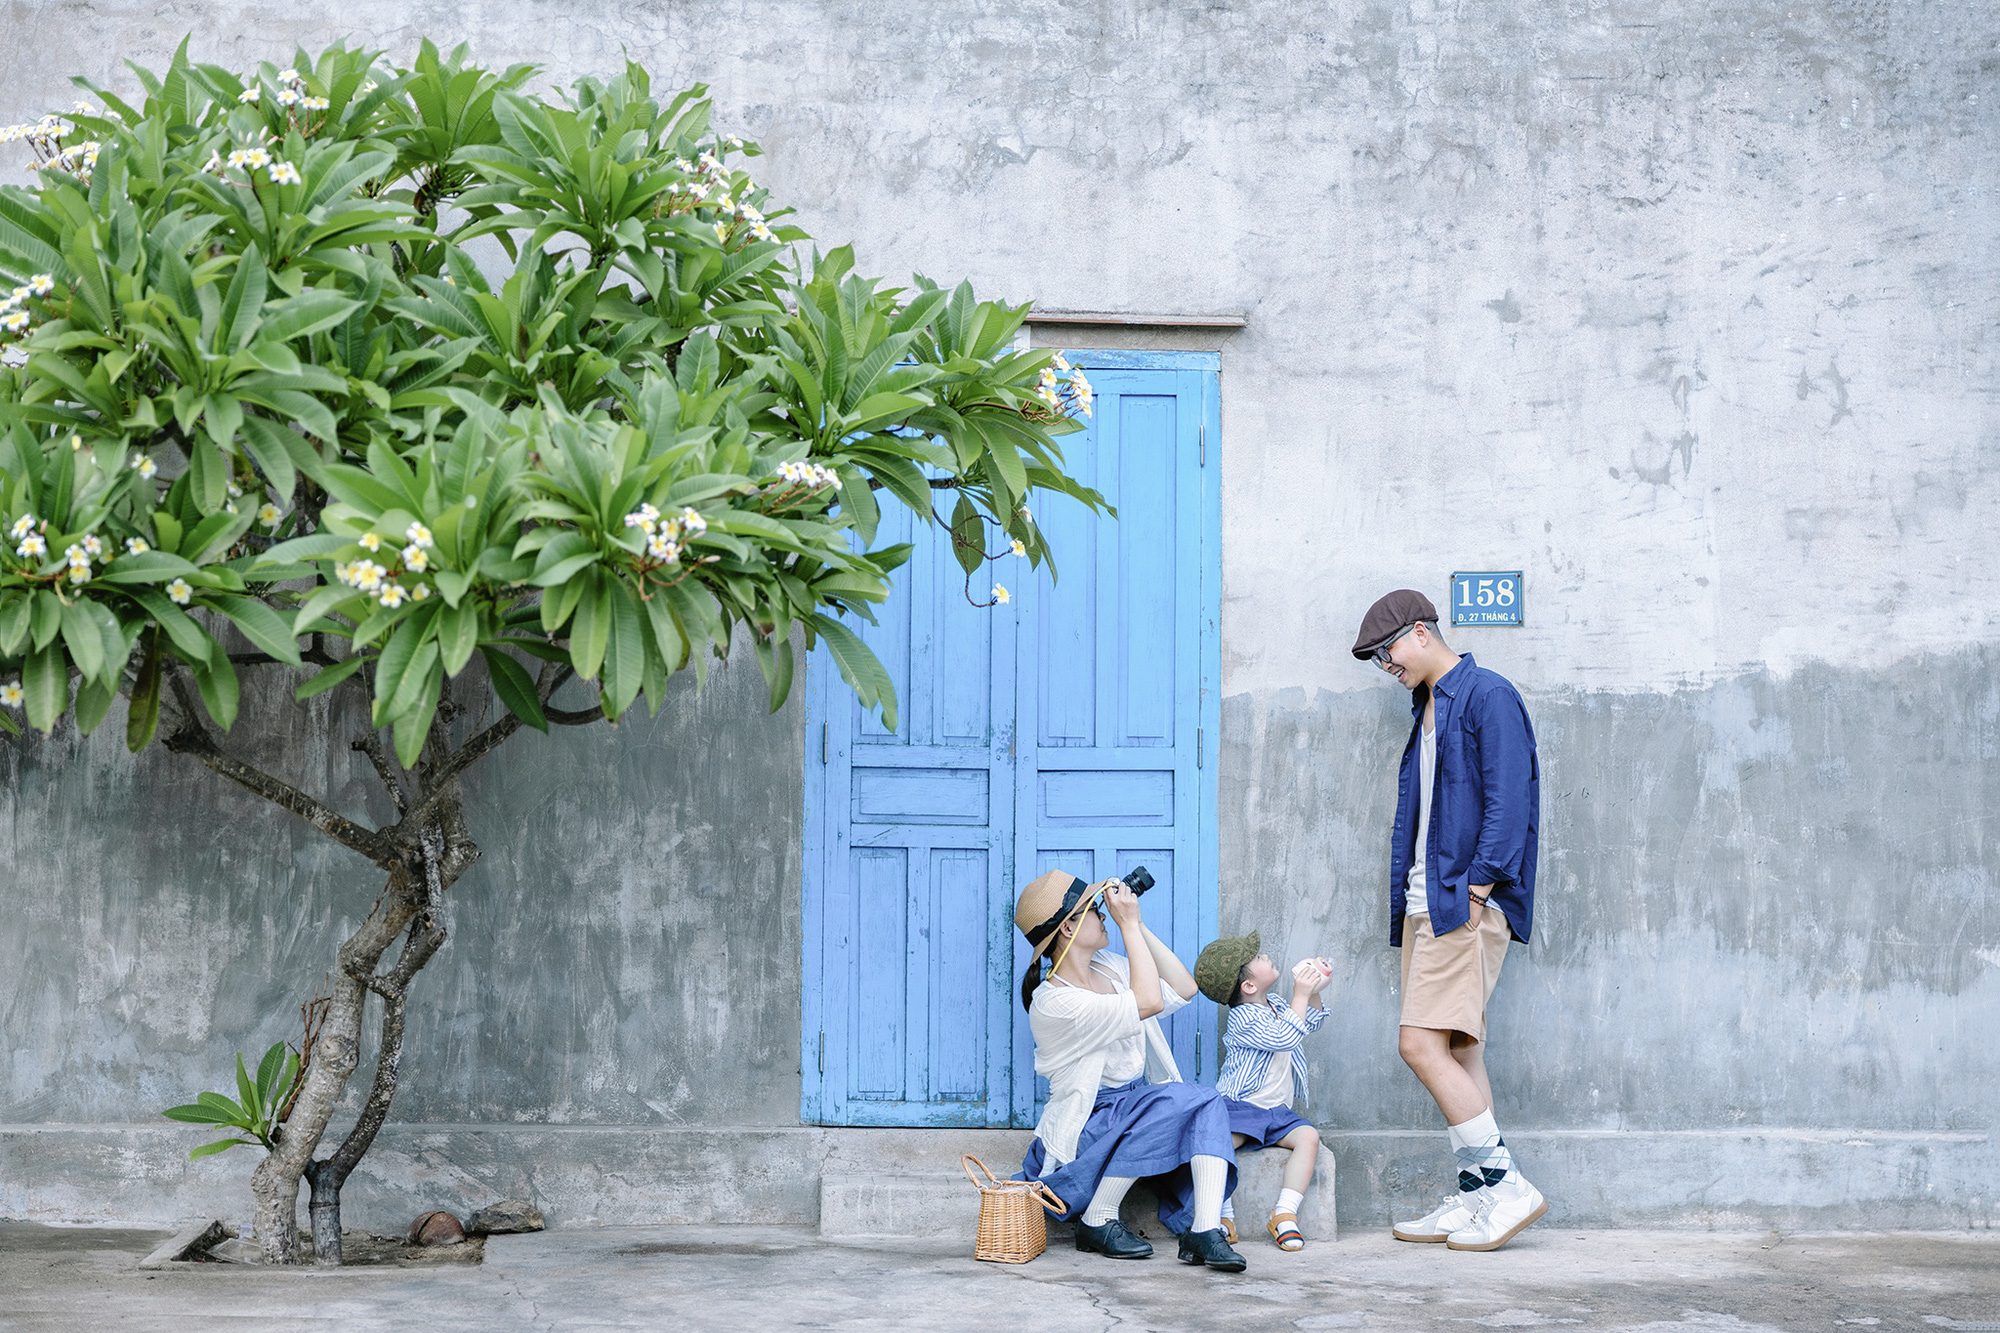 Bình Thuận xanh ngắt trong ảnh du lịch gia đình 3 người - Ảnh 2.